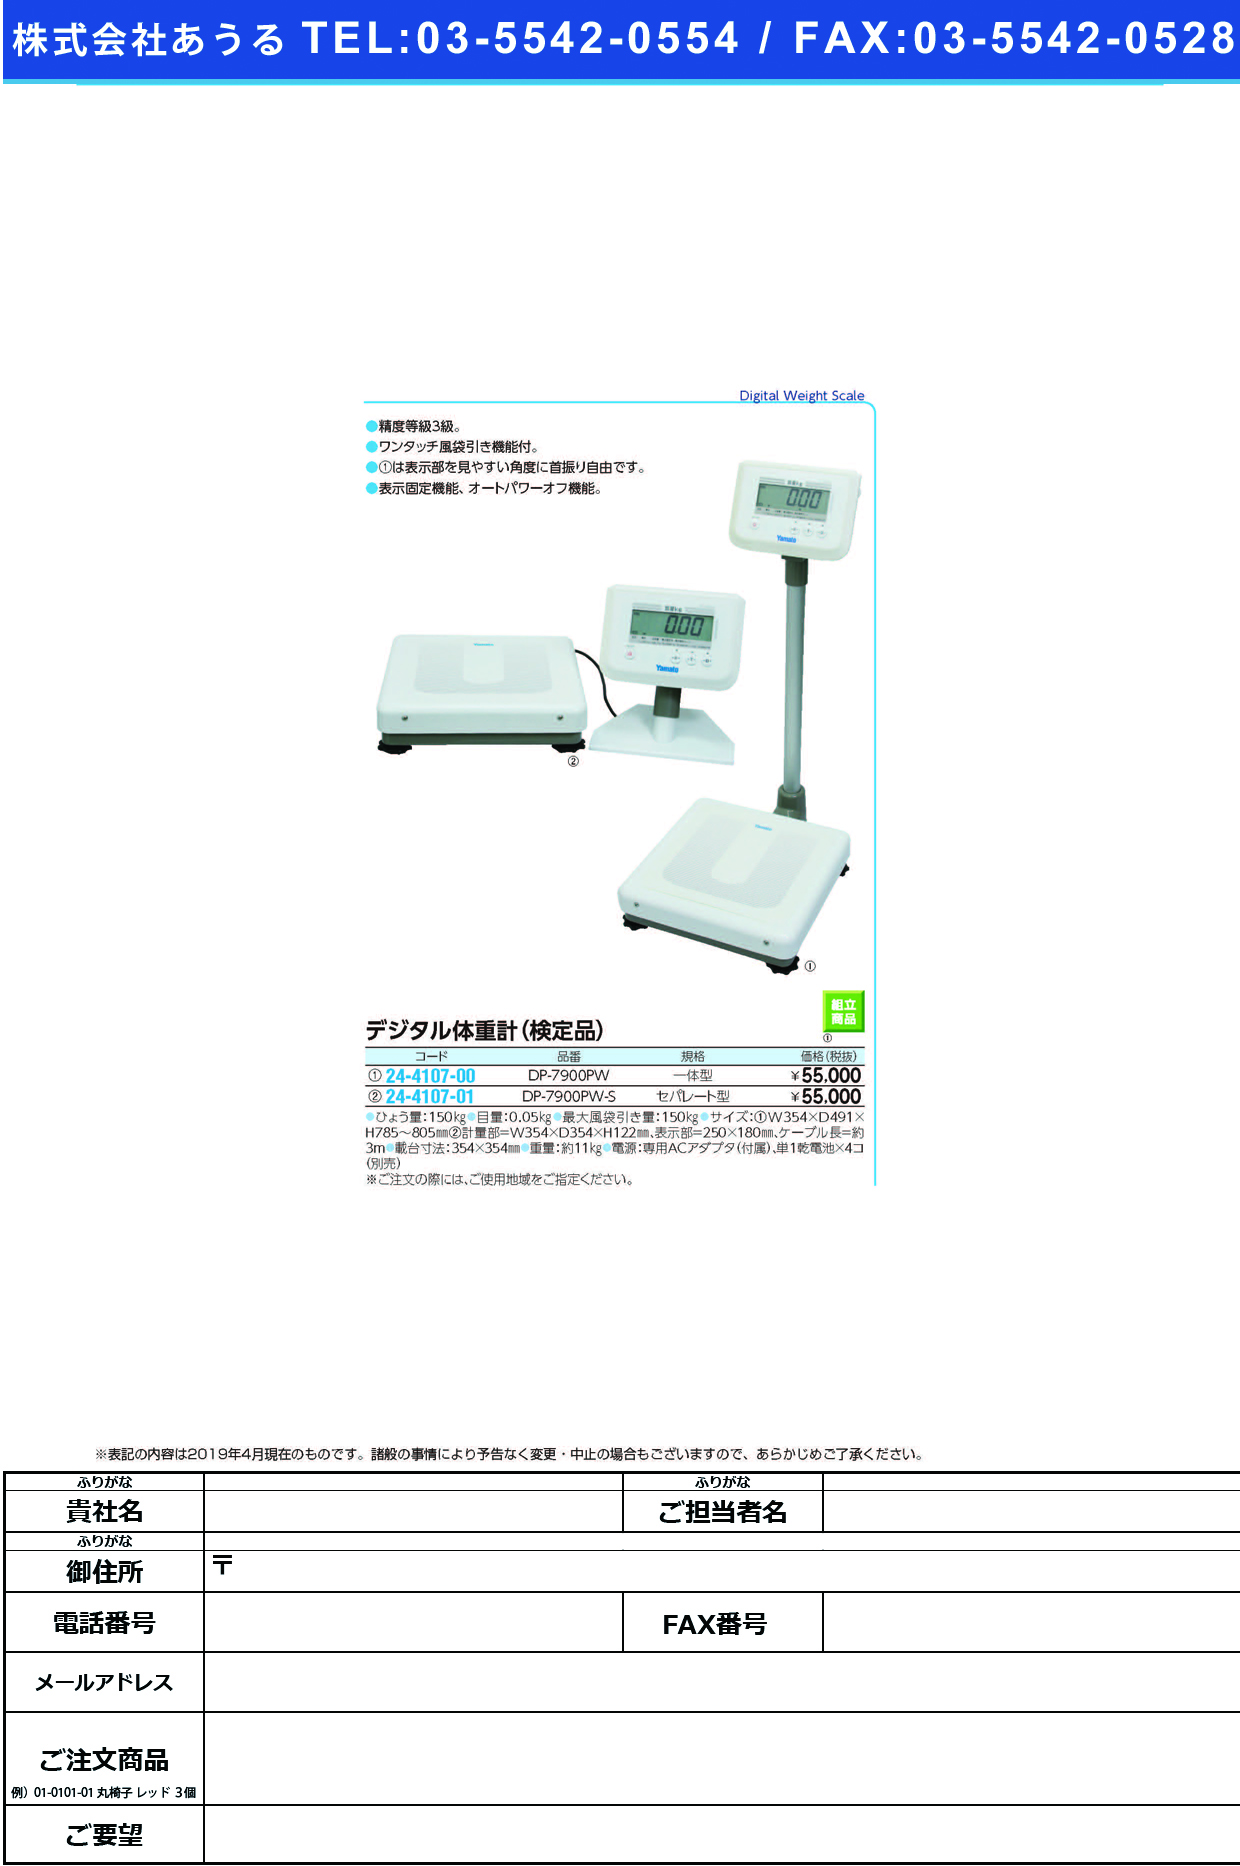 (24-4107-01)ヤマトデジタル体重計（検定付） DP-7900PW-S(ｾﾊﾟﾚｰﾄ) ﾔﾏﾄﾃﾞｼﾞﾀﾙﾀｲｼﾞｭｳｹｲ【1台単位】【2019年カタログ商品】